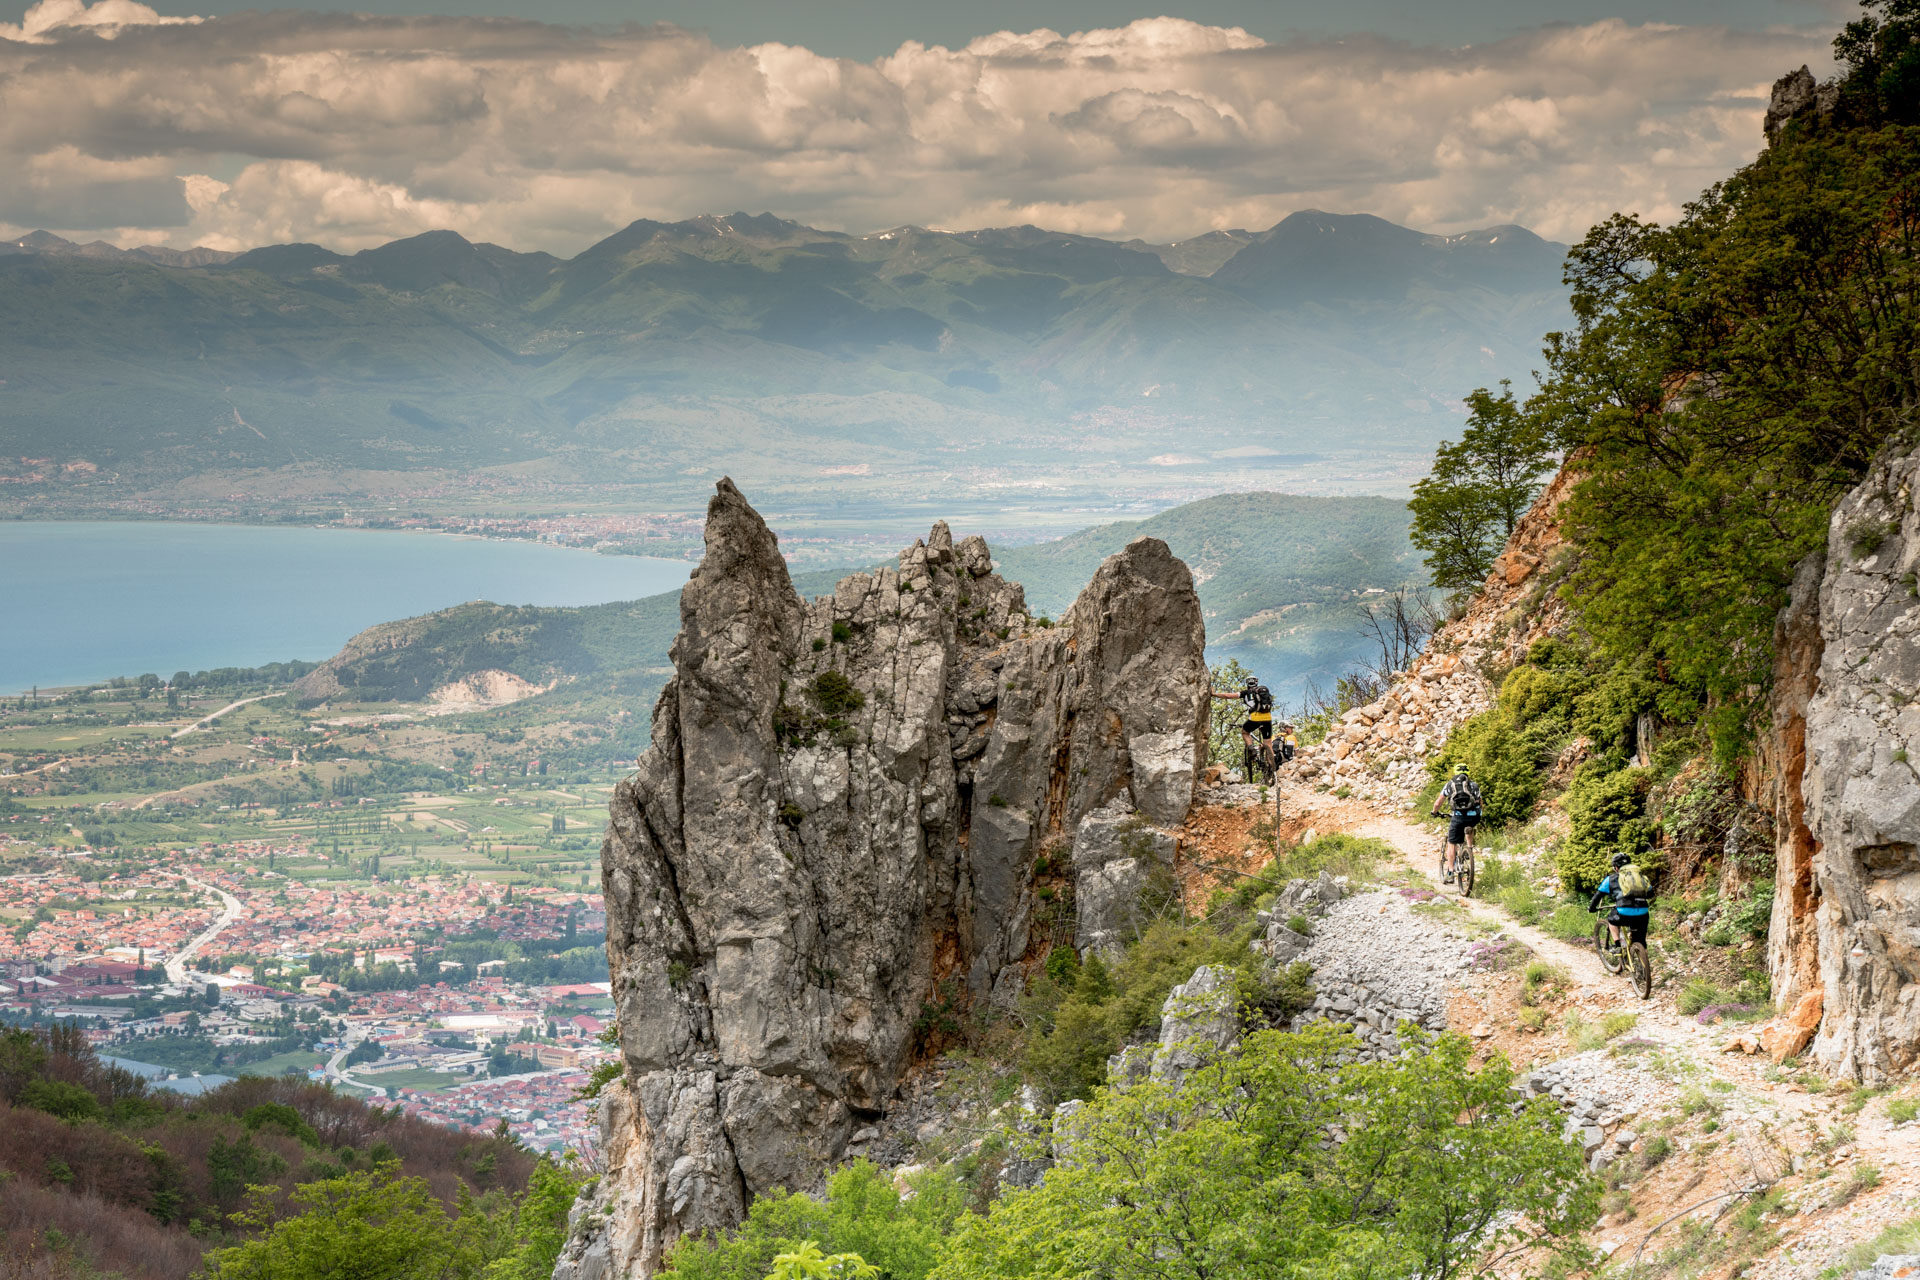 Biken im Galicica Nationalpark mit Blick auf den Ohridsee